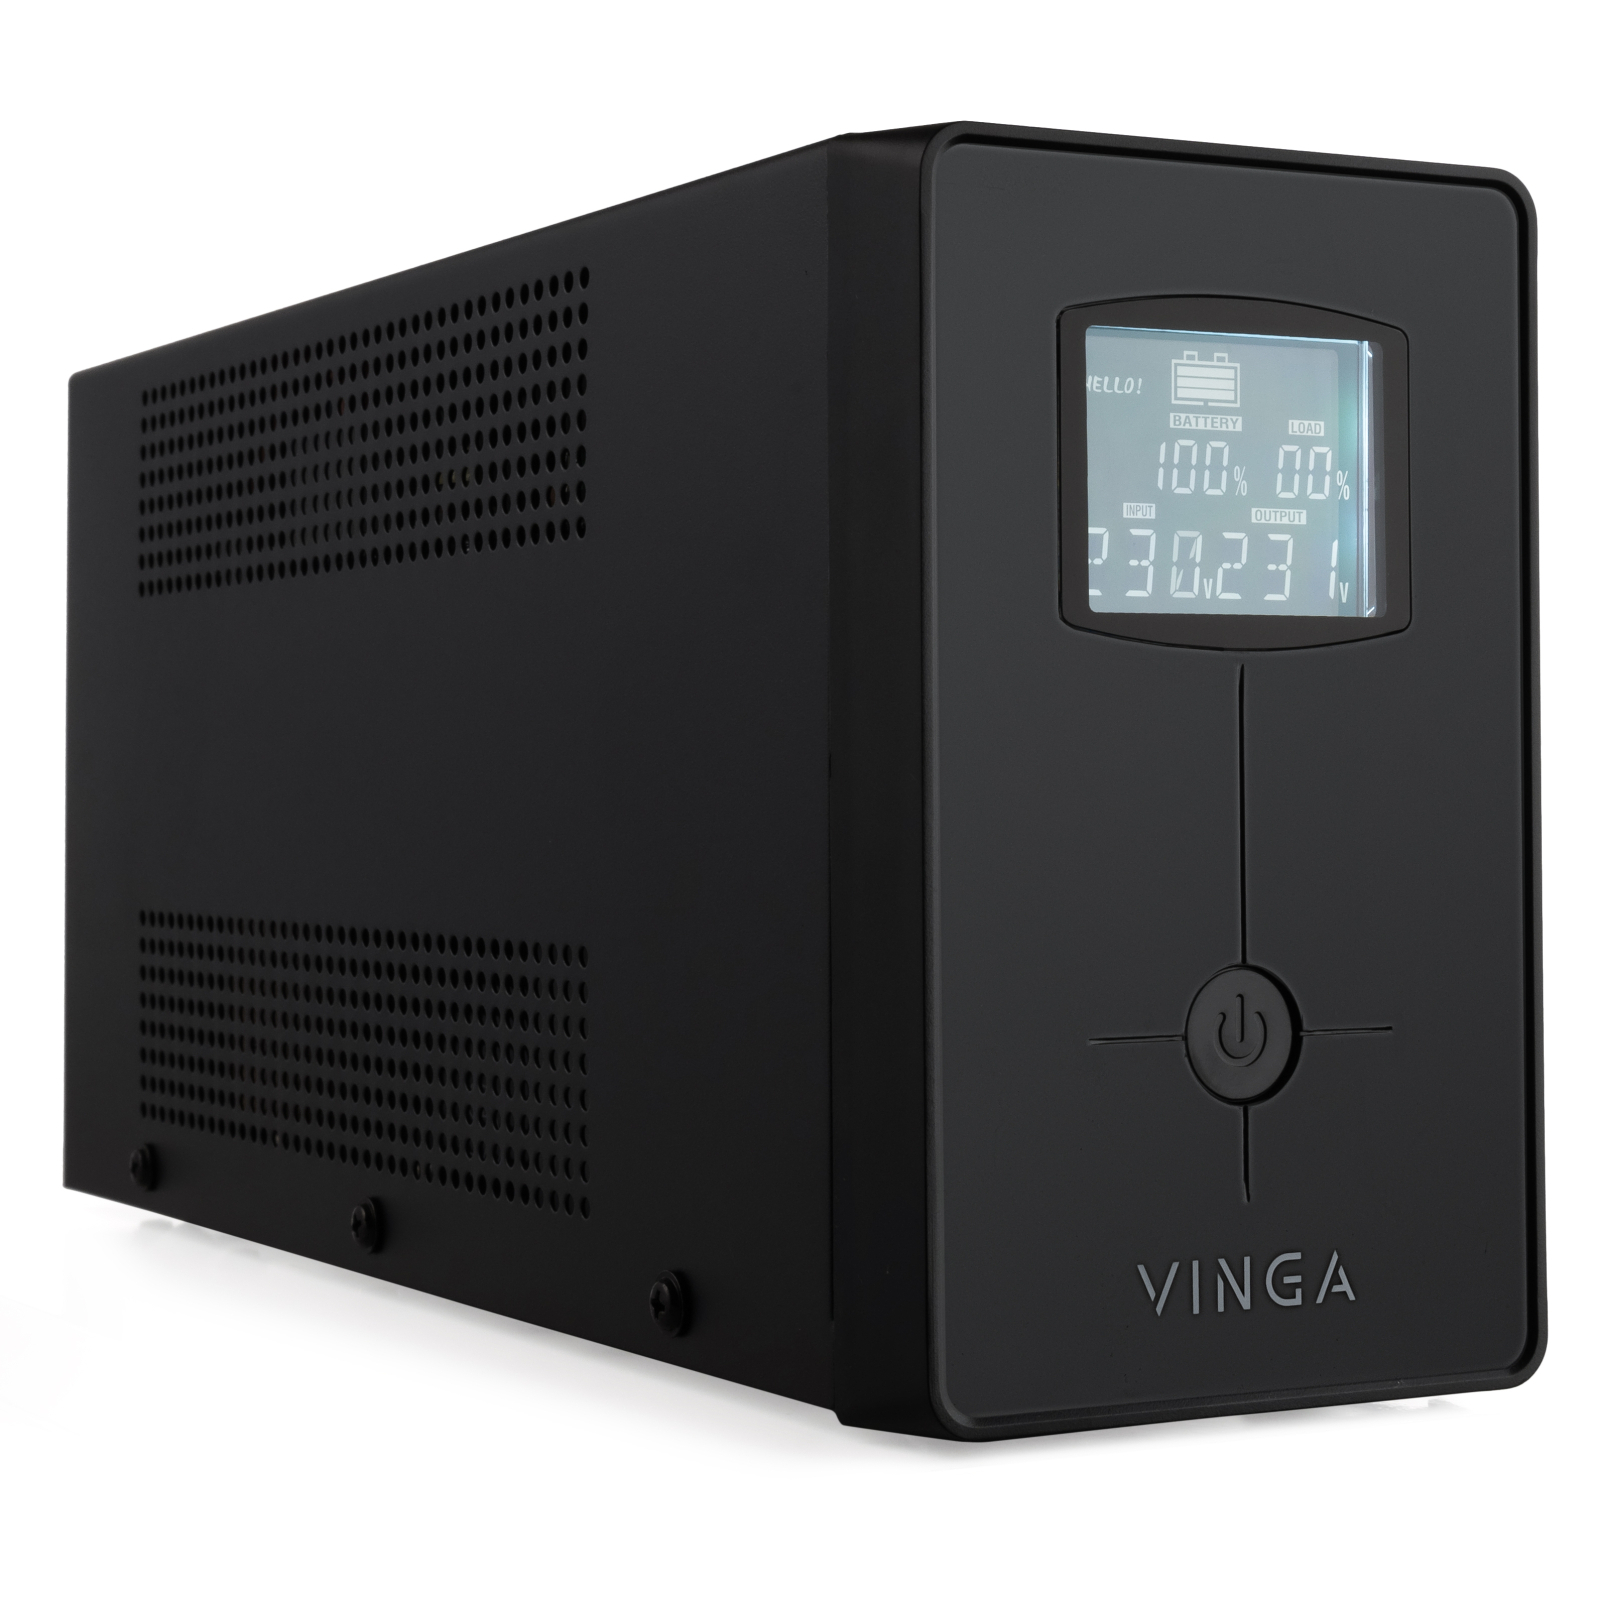 Источник бесперебойного питания Vinga LCD 600VA metal case with USB (VPC-600MU) изображение 2